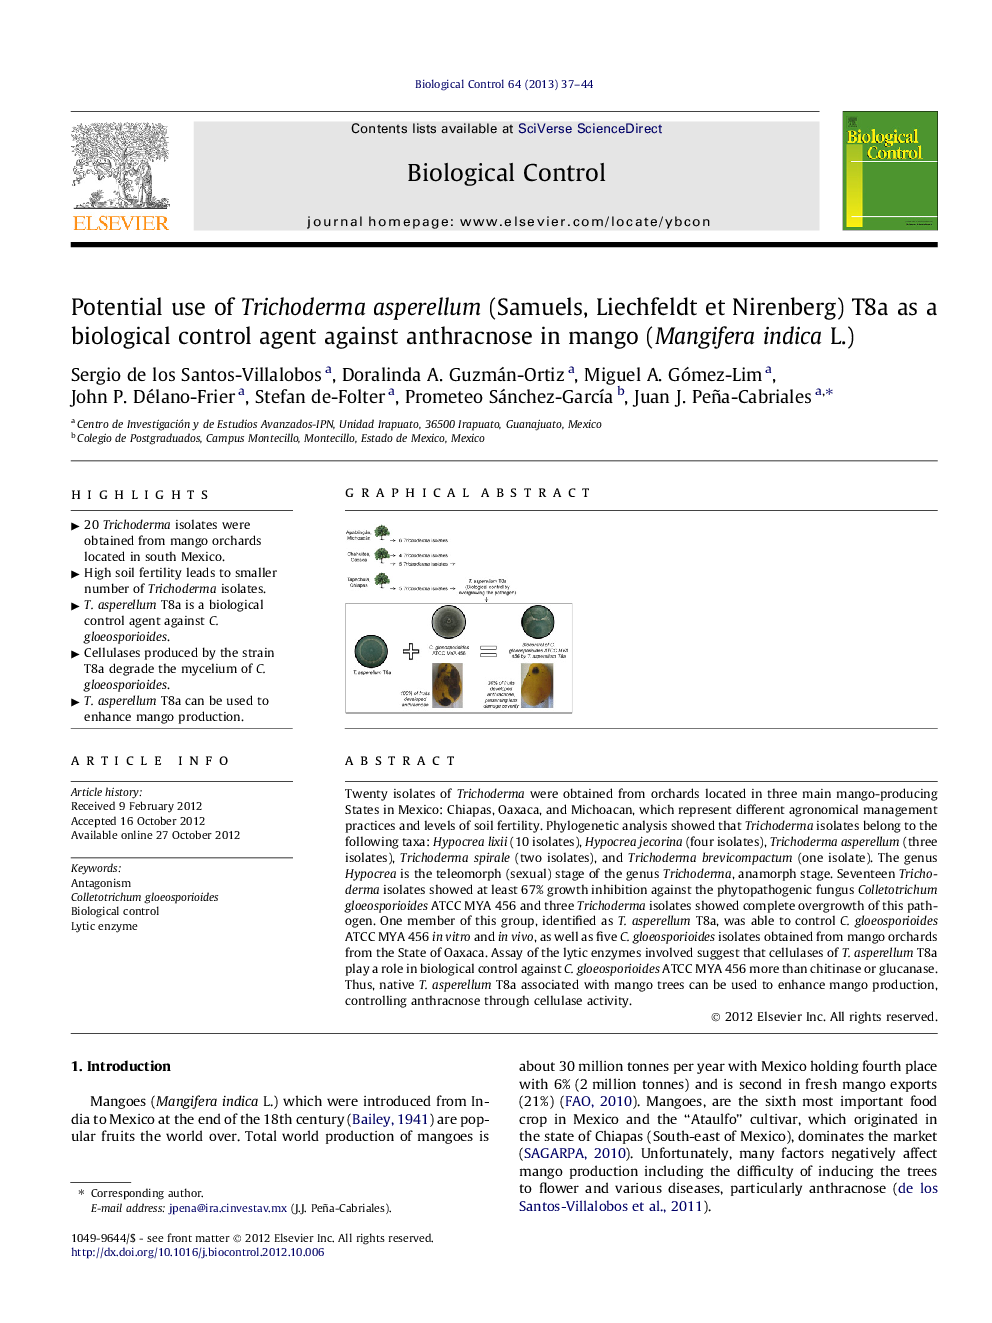 Potential use of Trichoderma asperellum (Samuels, Liechfeldt et Nirenberg) T8a as a biological control agent against anthracnose in mango (Mangifera indica L.)